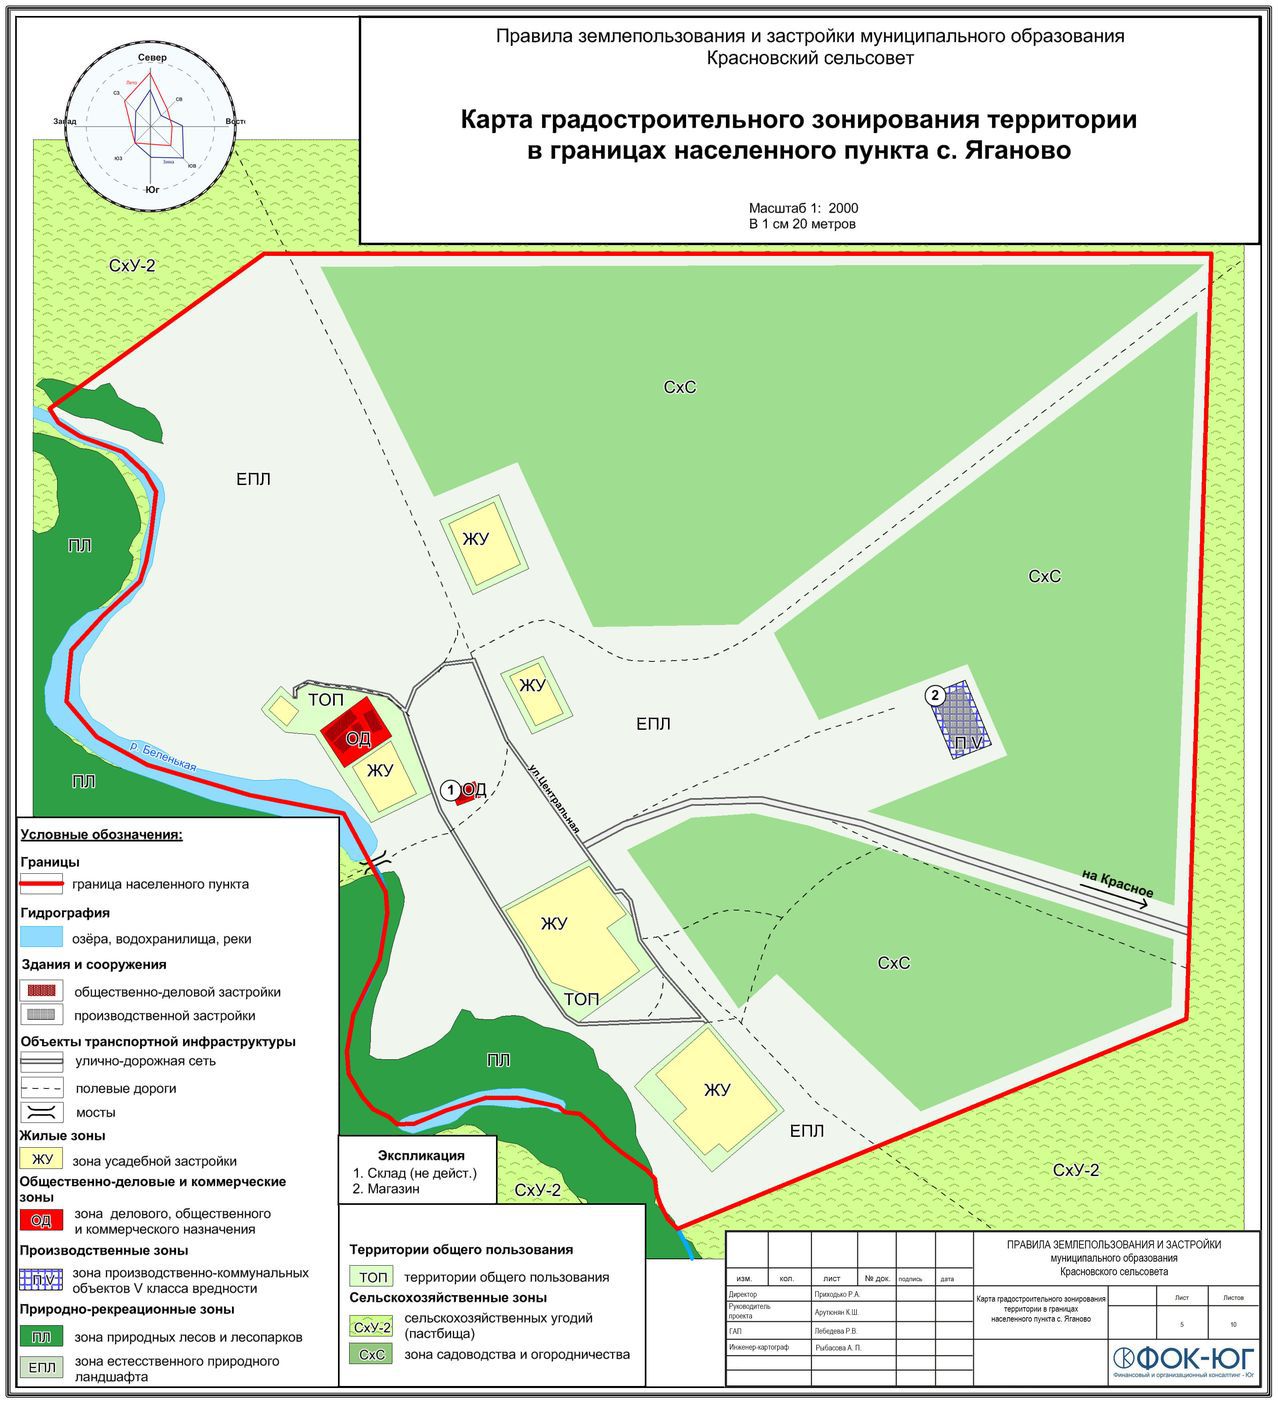 Карта градостроительного зонирования территории в границах населенного пункту с. Яганово